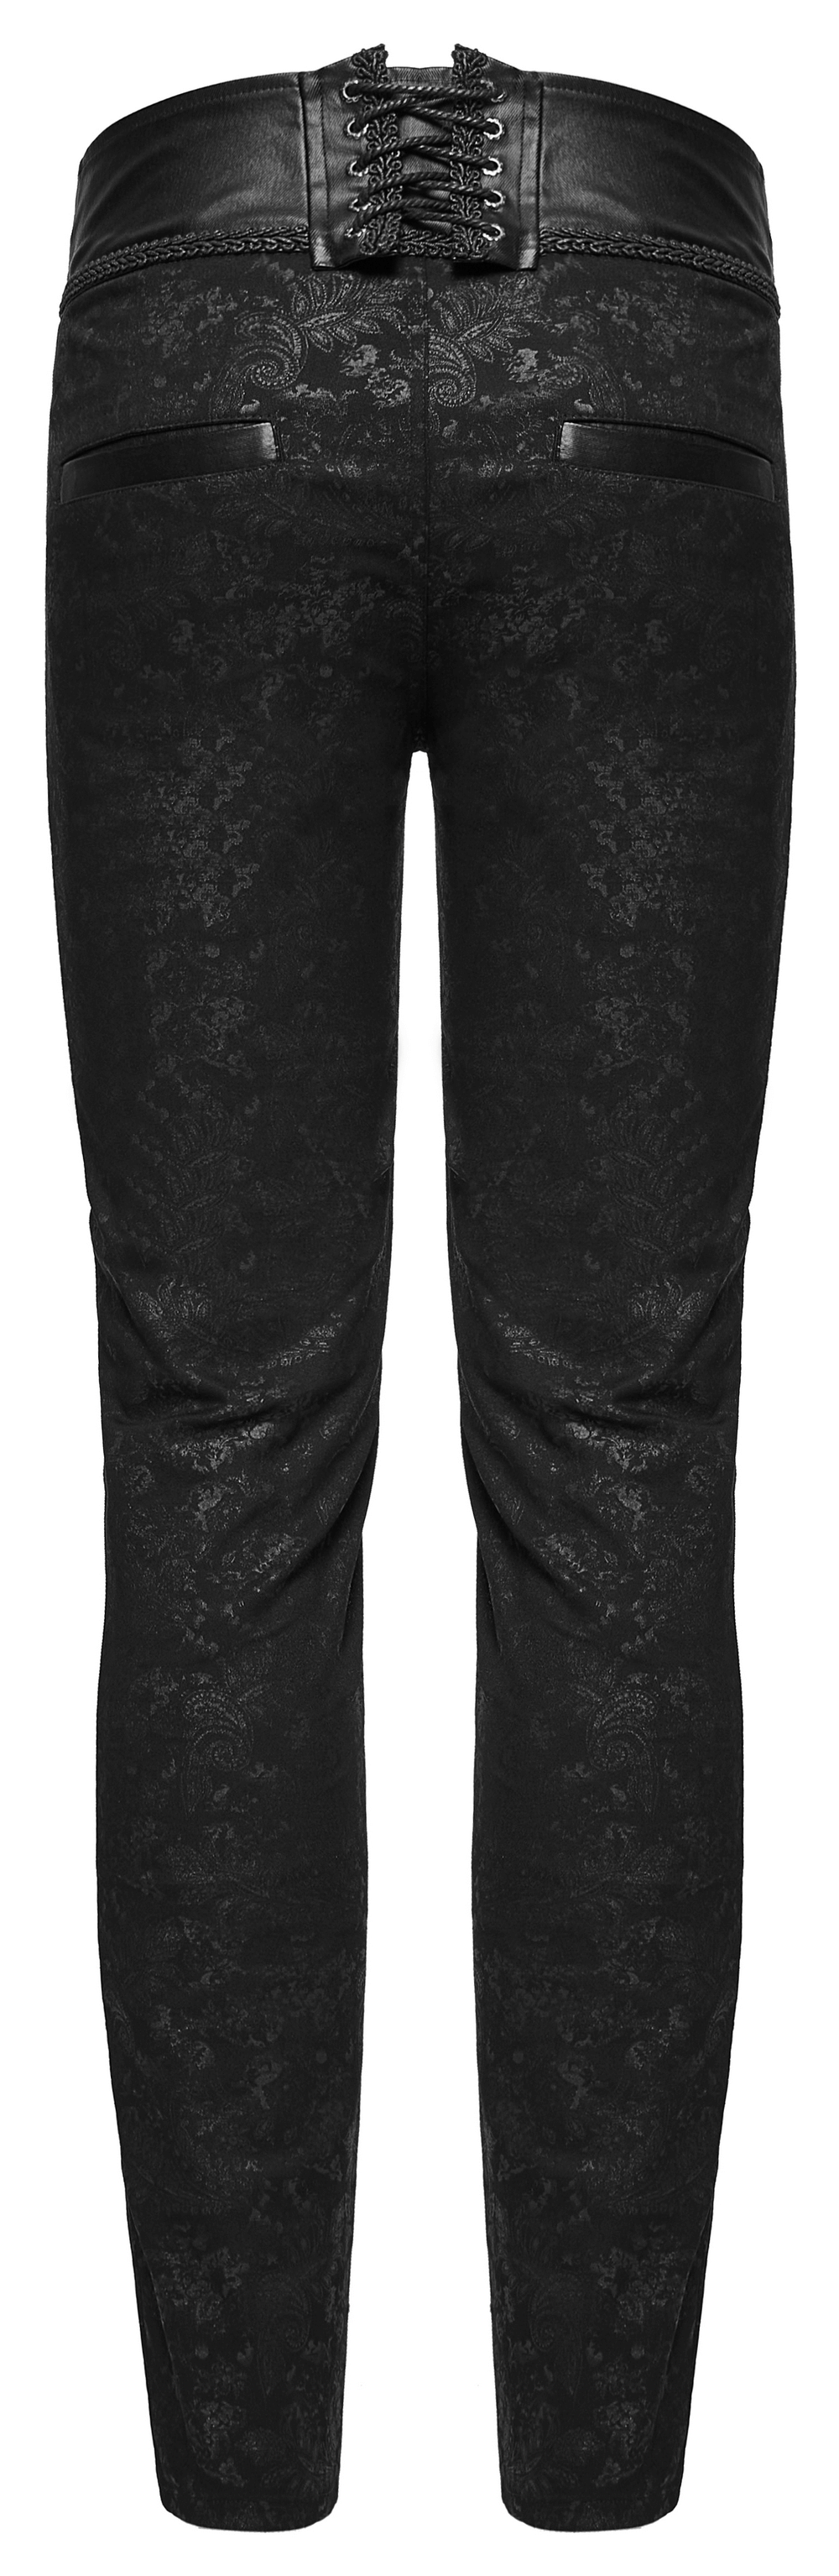 Gothic Stylish Black Lace Up Back Skinny Jeans